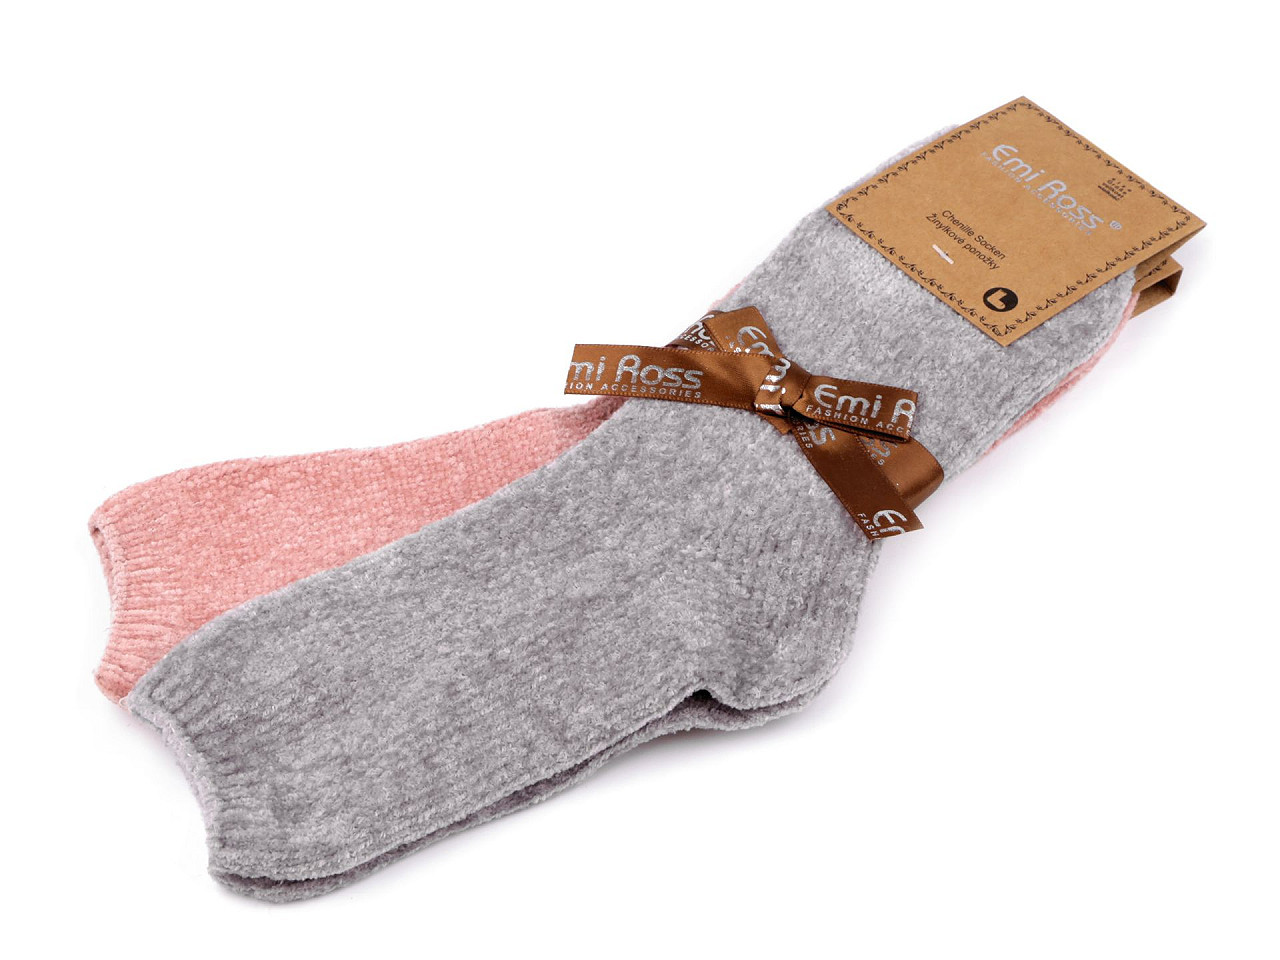 Dámské žinylkové ponožky Emi Ross, barva 24 (vel. 39-42) mix